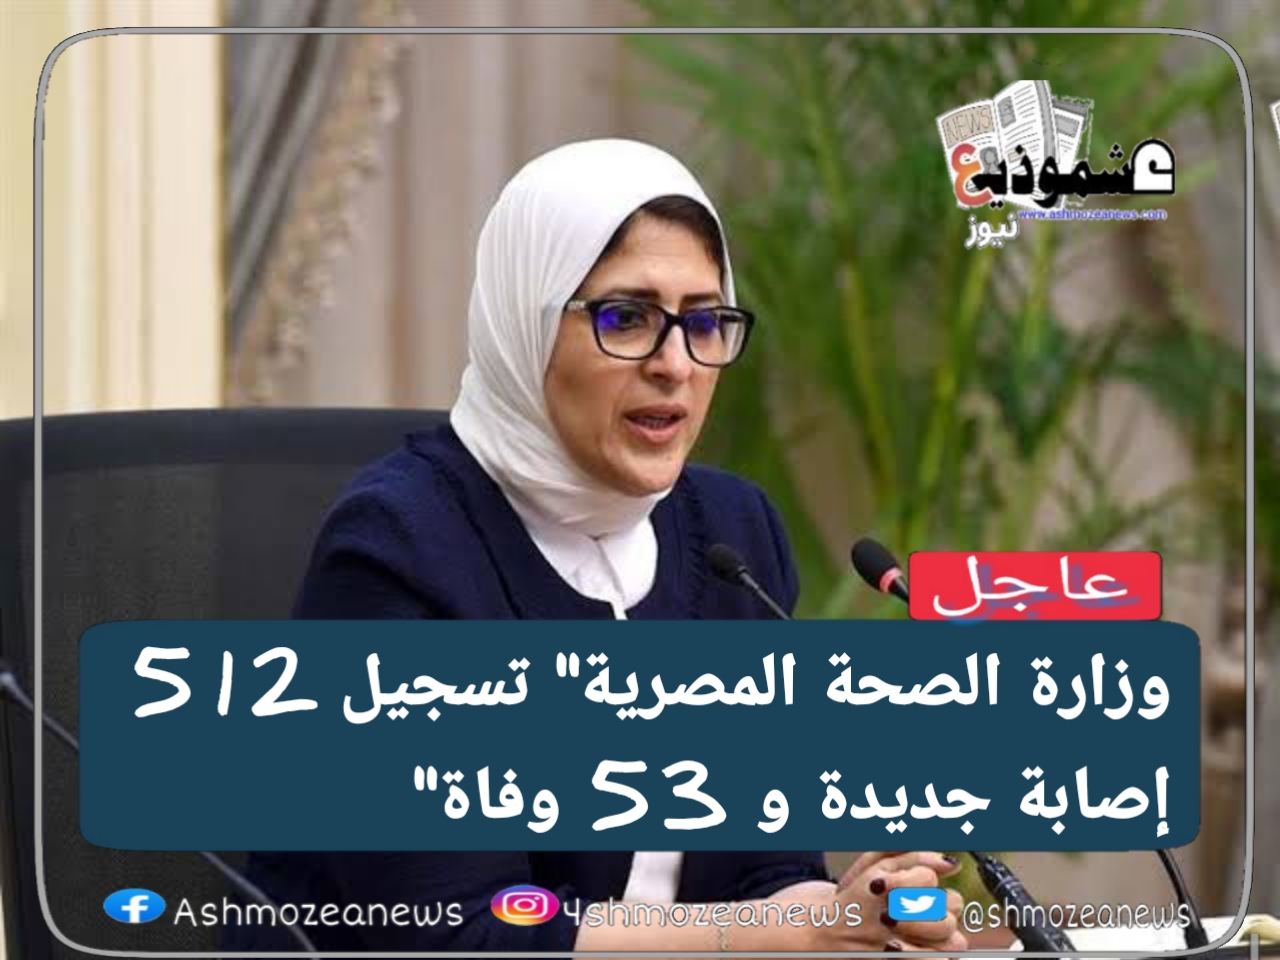 وزارة الصحة المصرية" تسجيل 512 إصابة جديدة و 53 وفاة" 